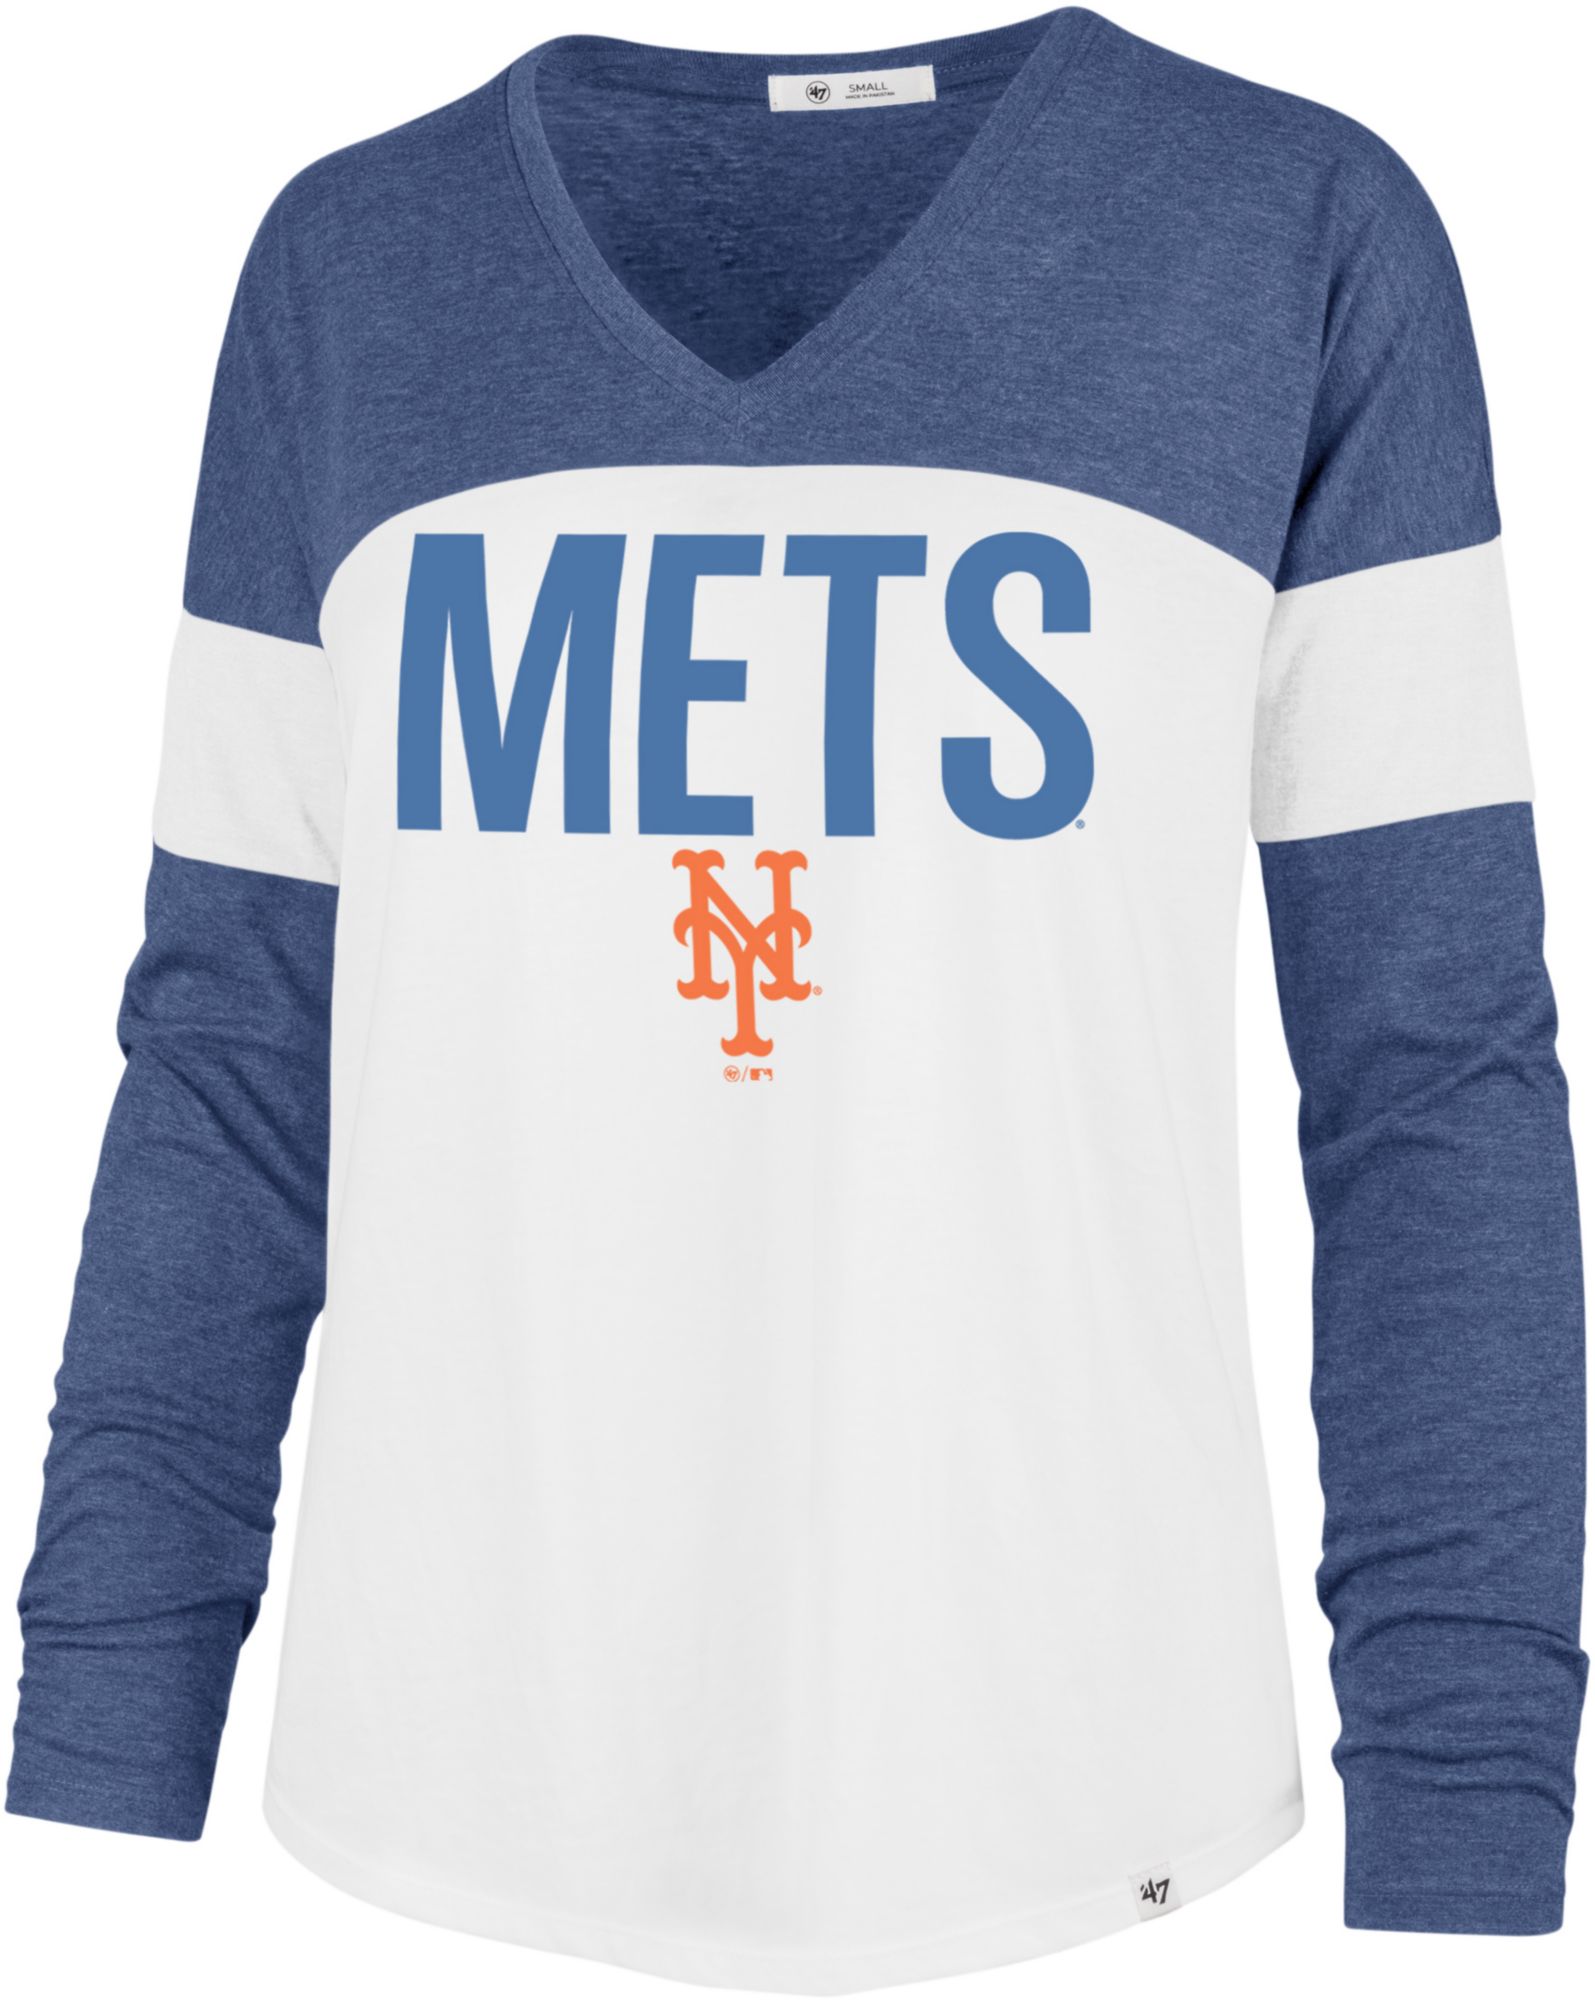 NY Mets: Tie Dye Men's T-Shirt